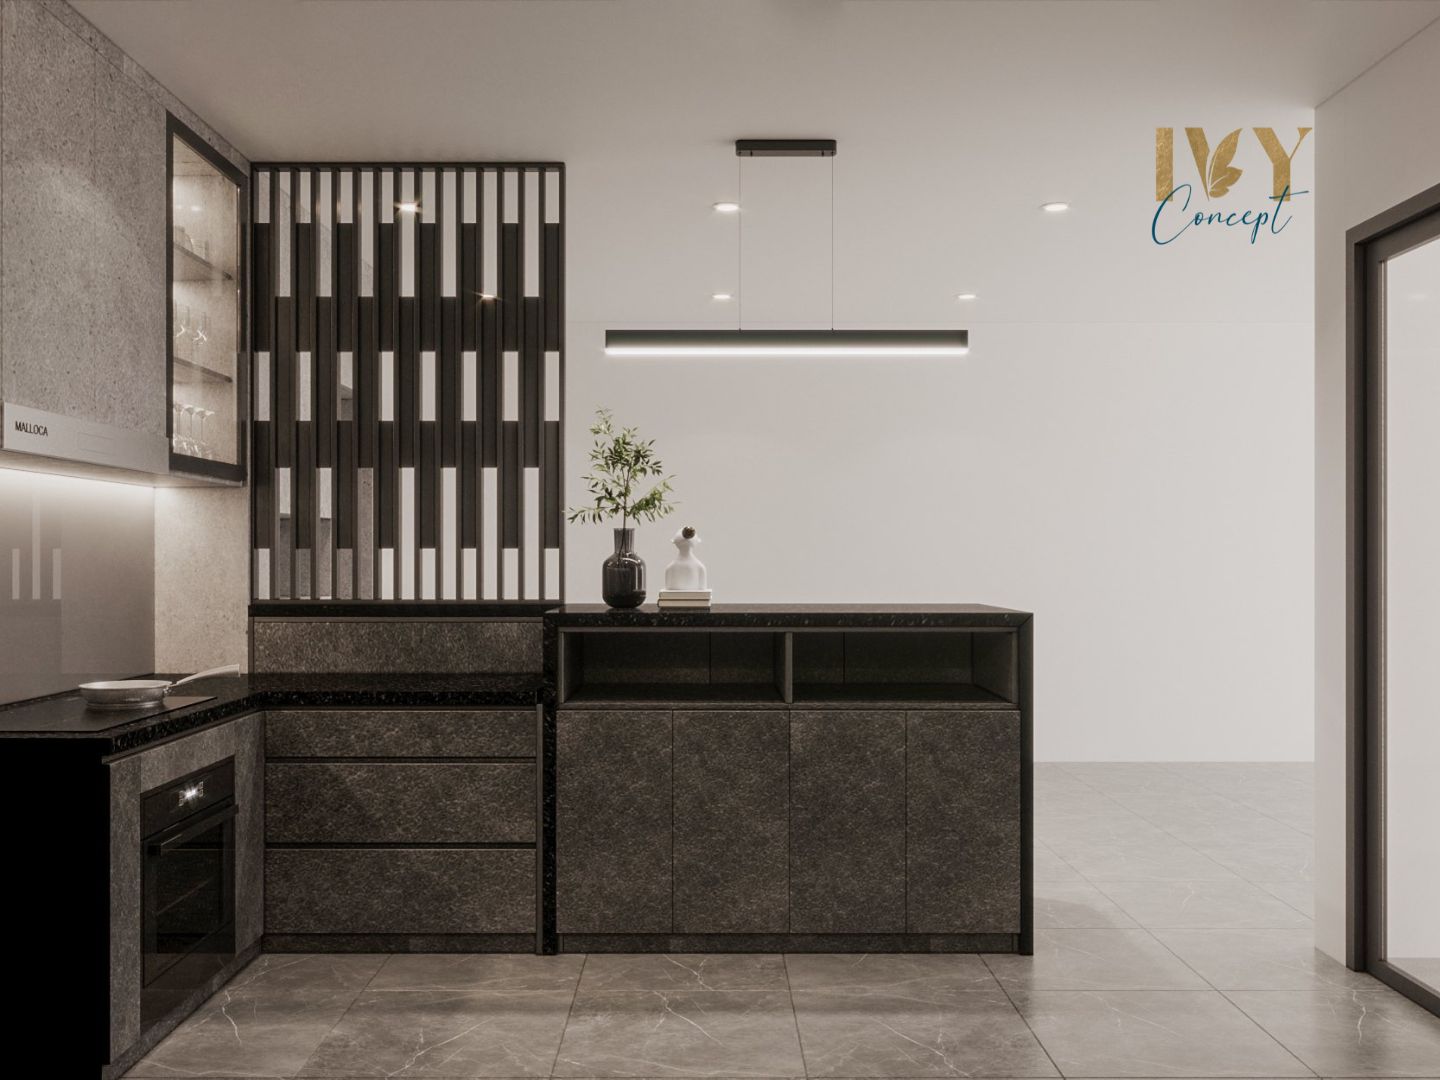 Phòng bếp, phong cách Tối giản Minimalist, thiết kế concept nội thất, căn hộ PetroVietnam Landmark